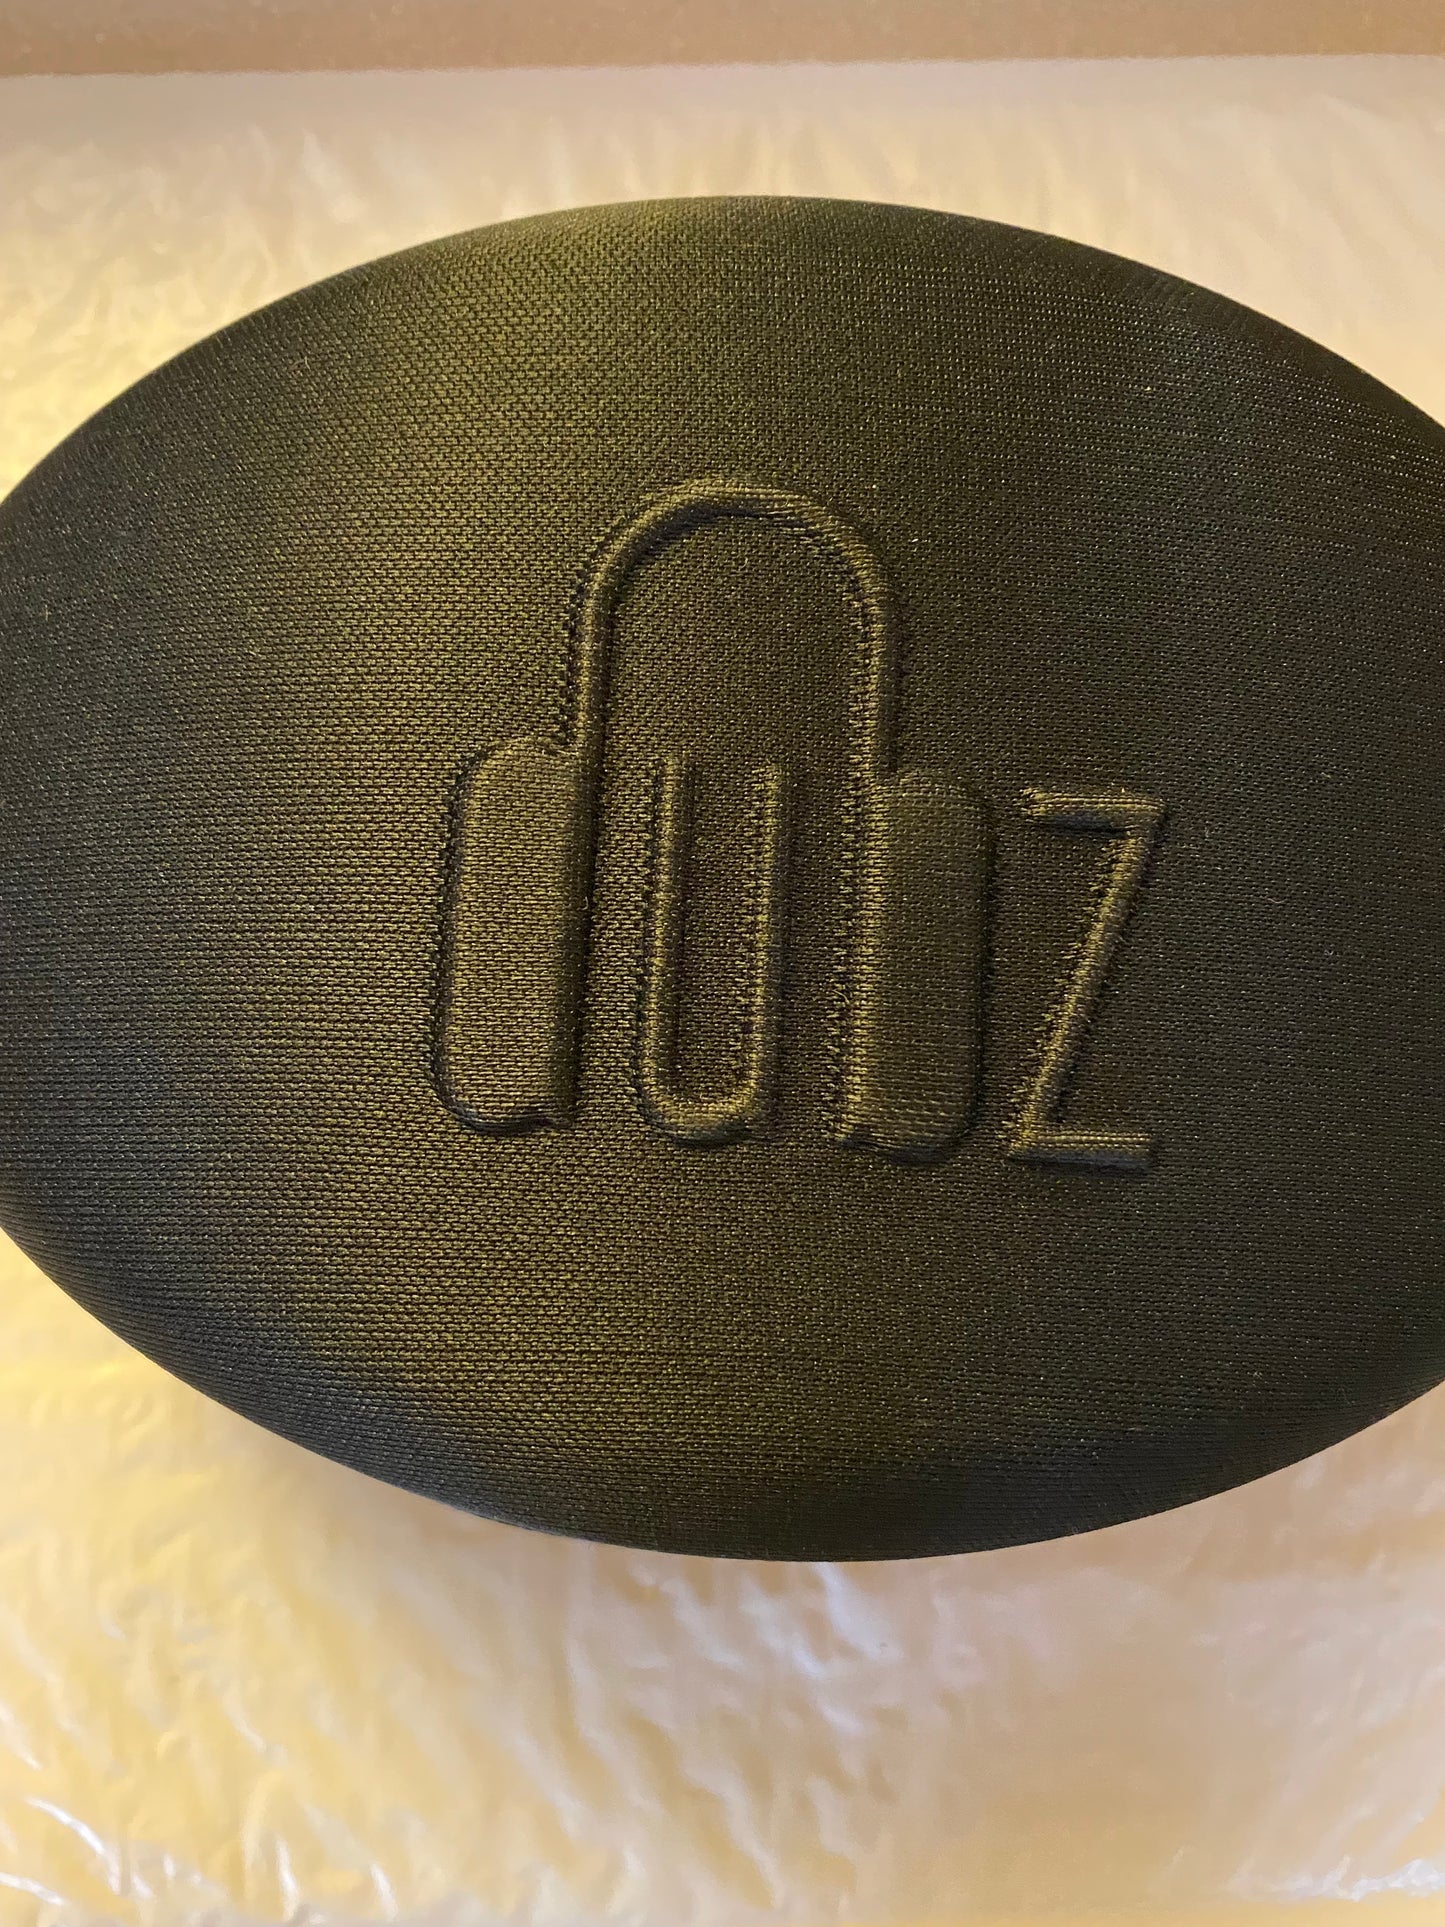 DUBZ HD Headphone